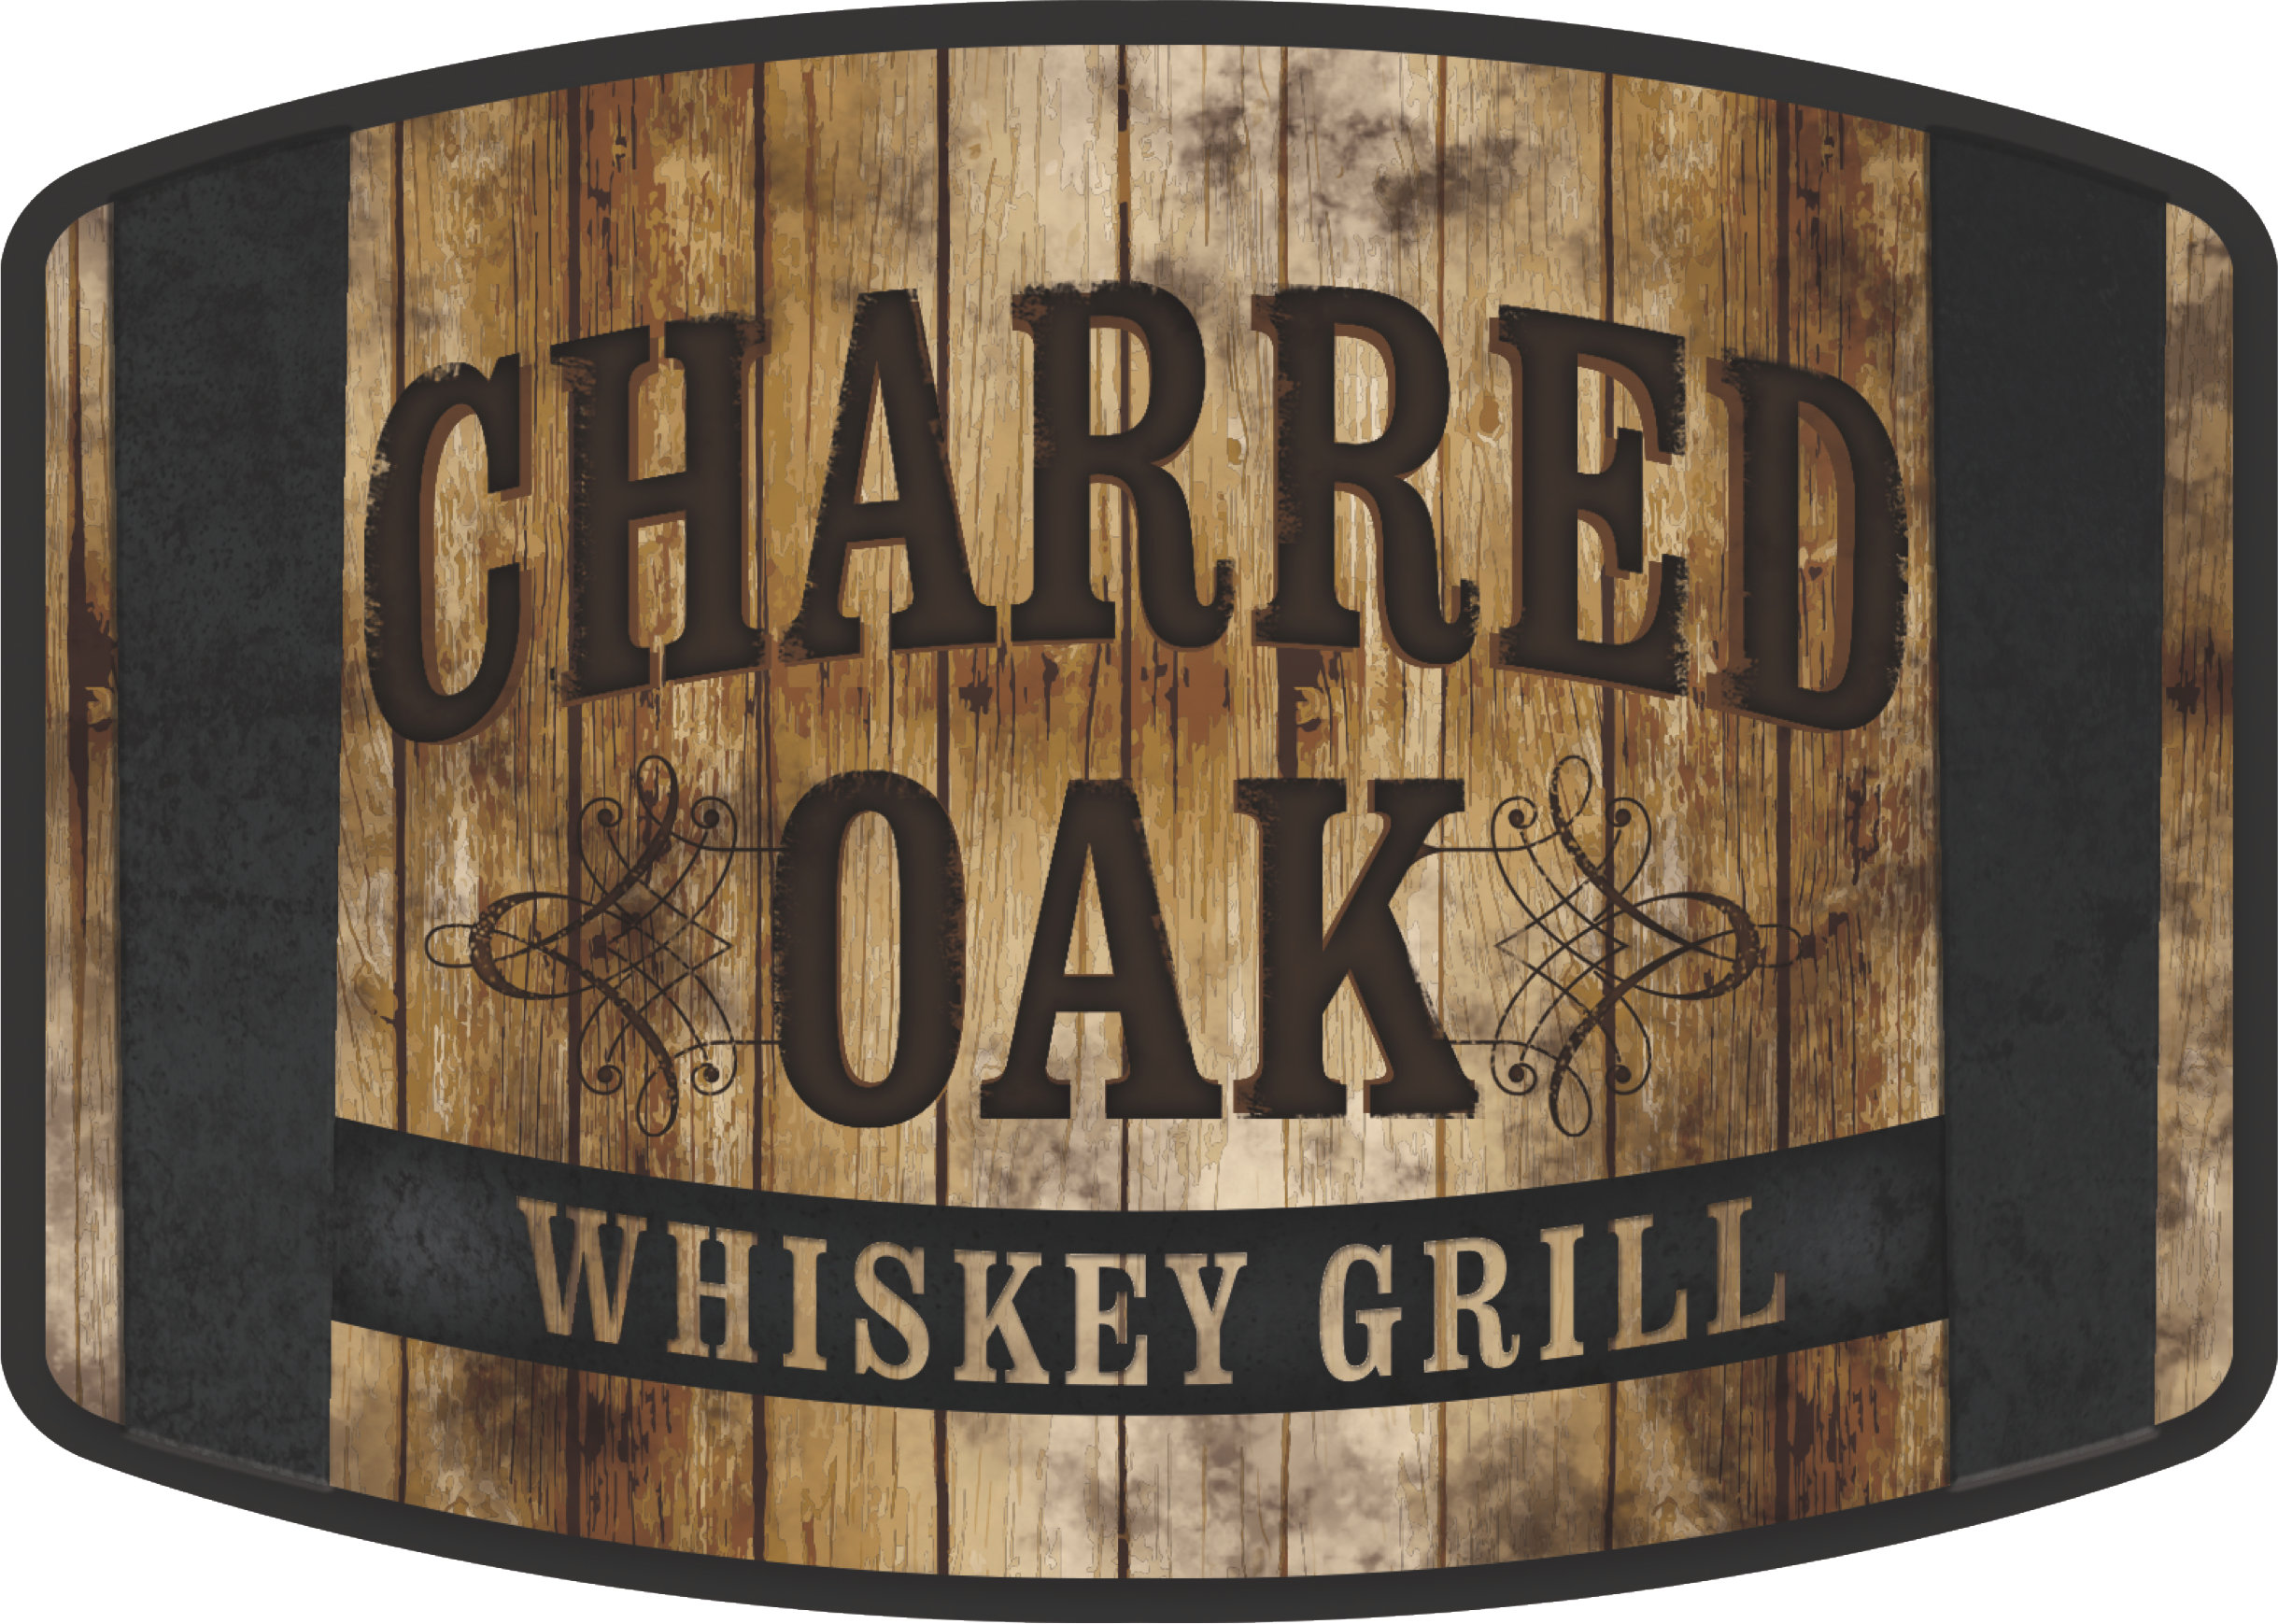 Charred Oak Grill Home